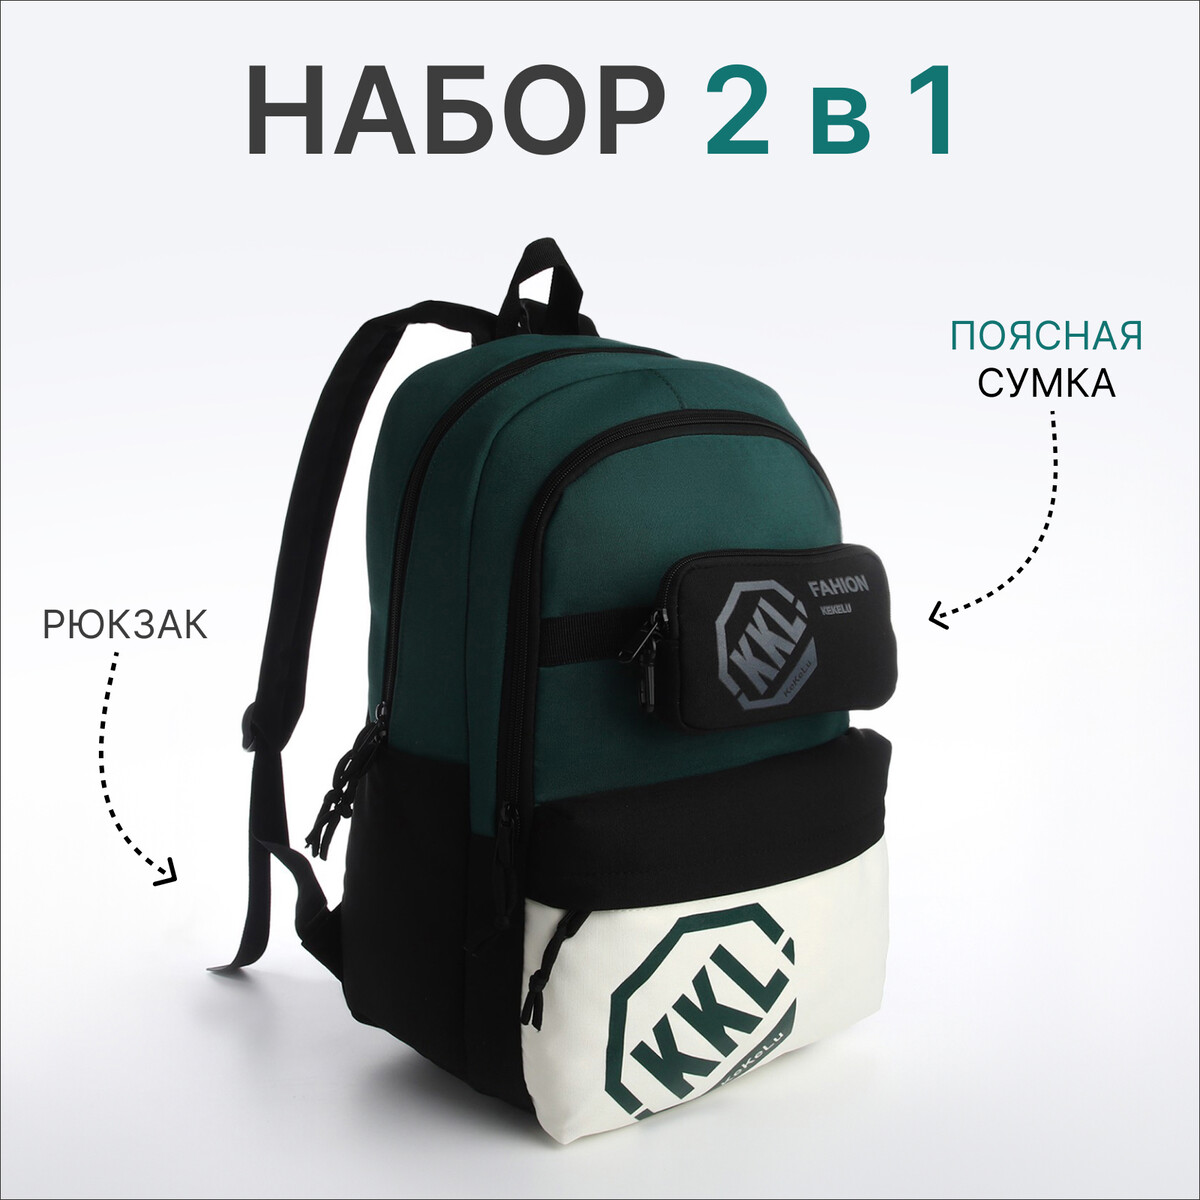 Рюкзак молодежный из текстиля на молнии, 3 кармана, сумка, держатель для чемодана, цвет черный/зеленый рюкзак молодежный из текстиля на молнии 3 кармана сумка держатель для чемодана